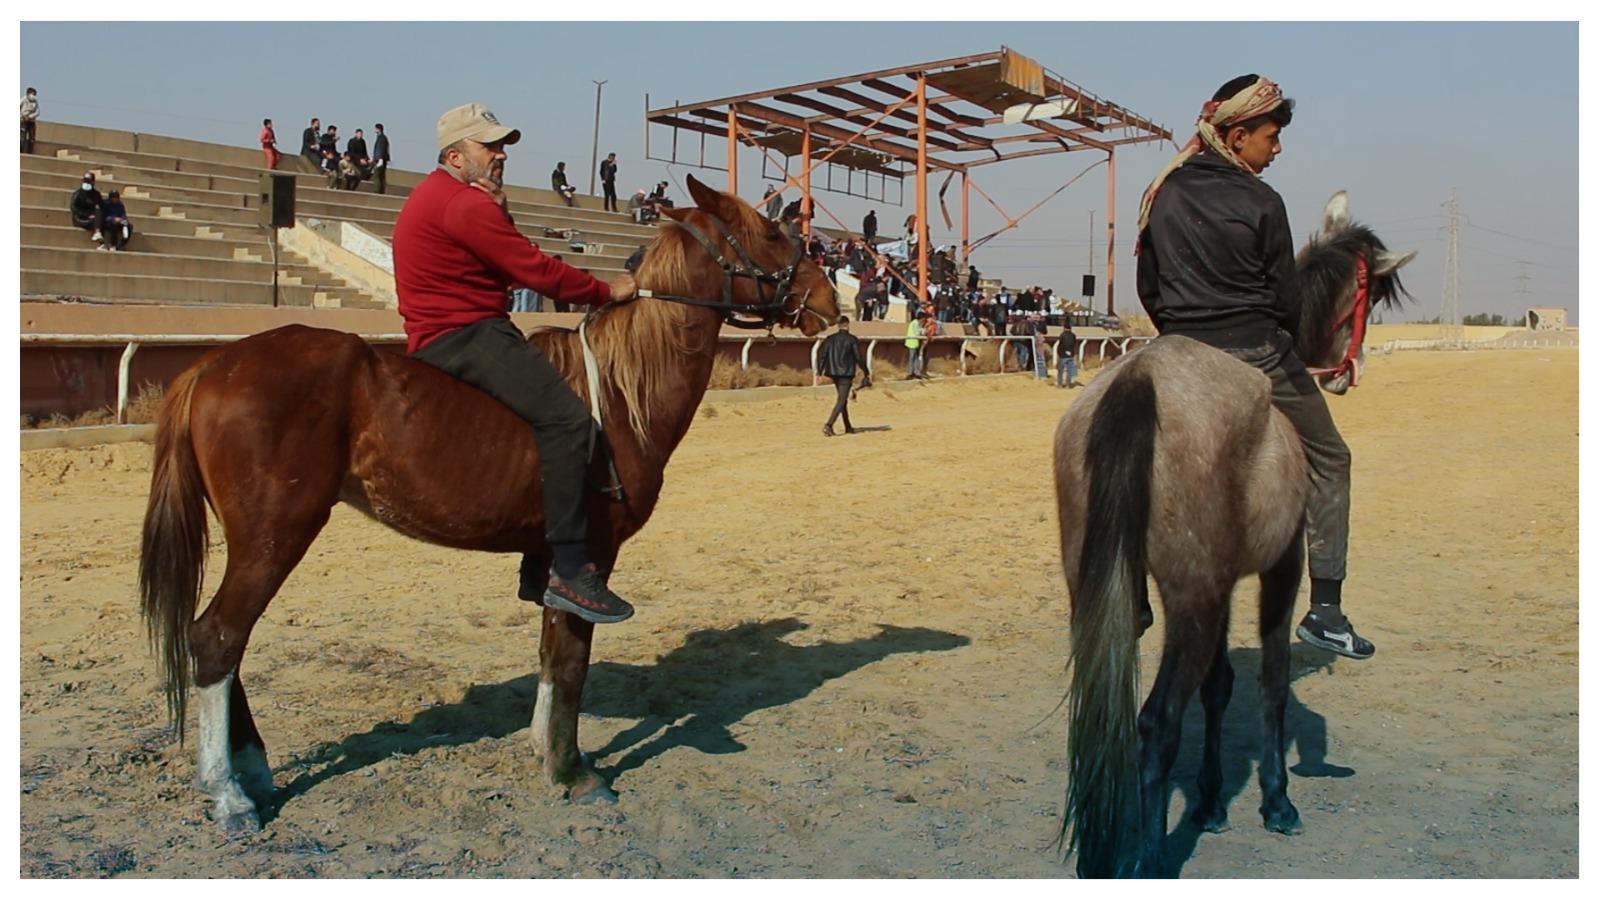 الثاني من نوعه.. مدينة الفروسية في الرقة تستضيف سباقاً للخيول العربية الأصيلة (فيديو)